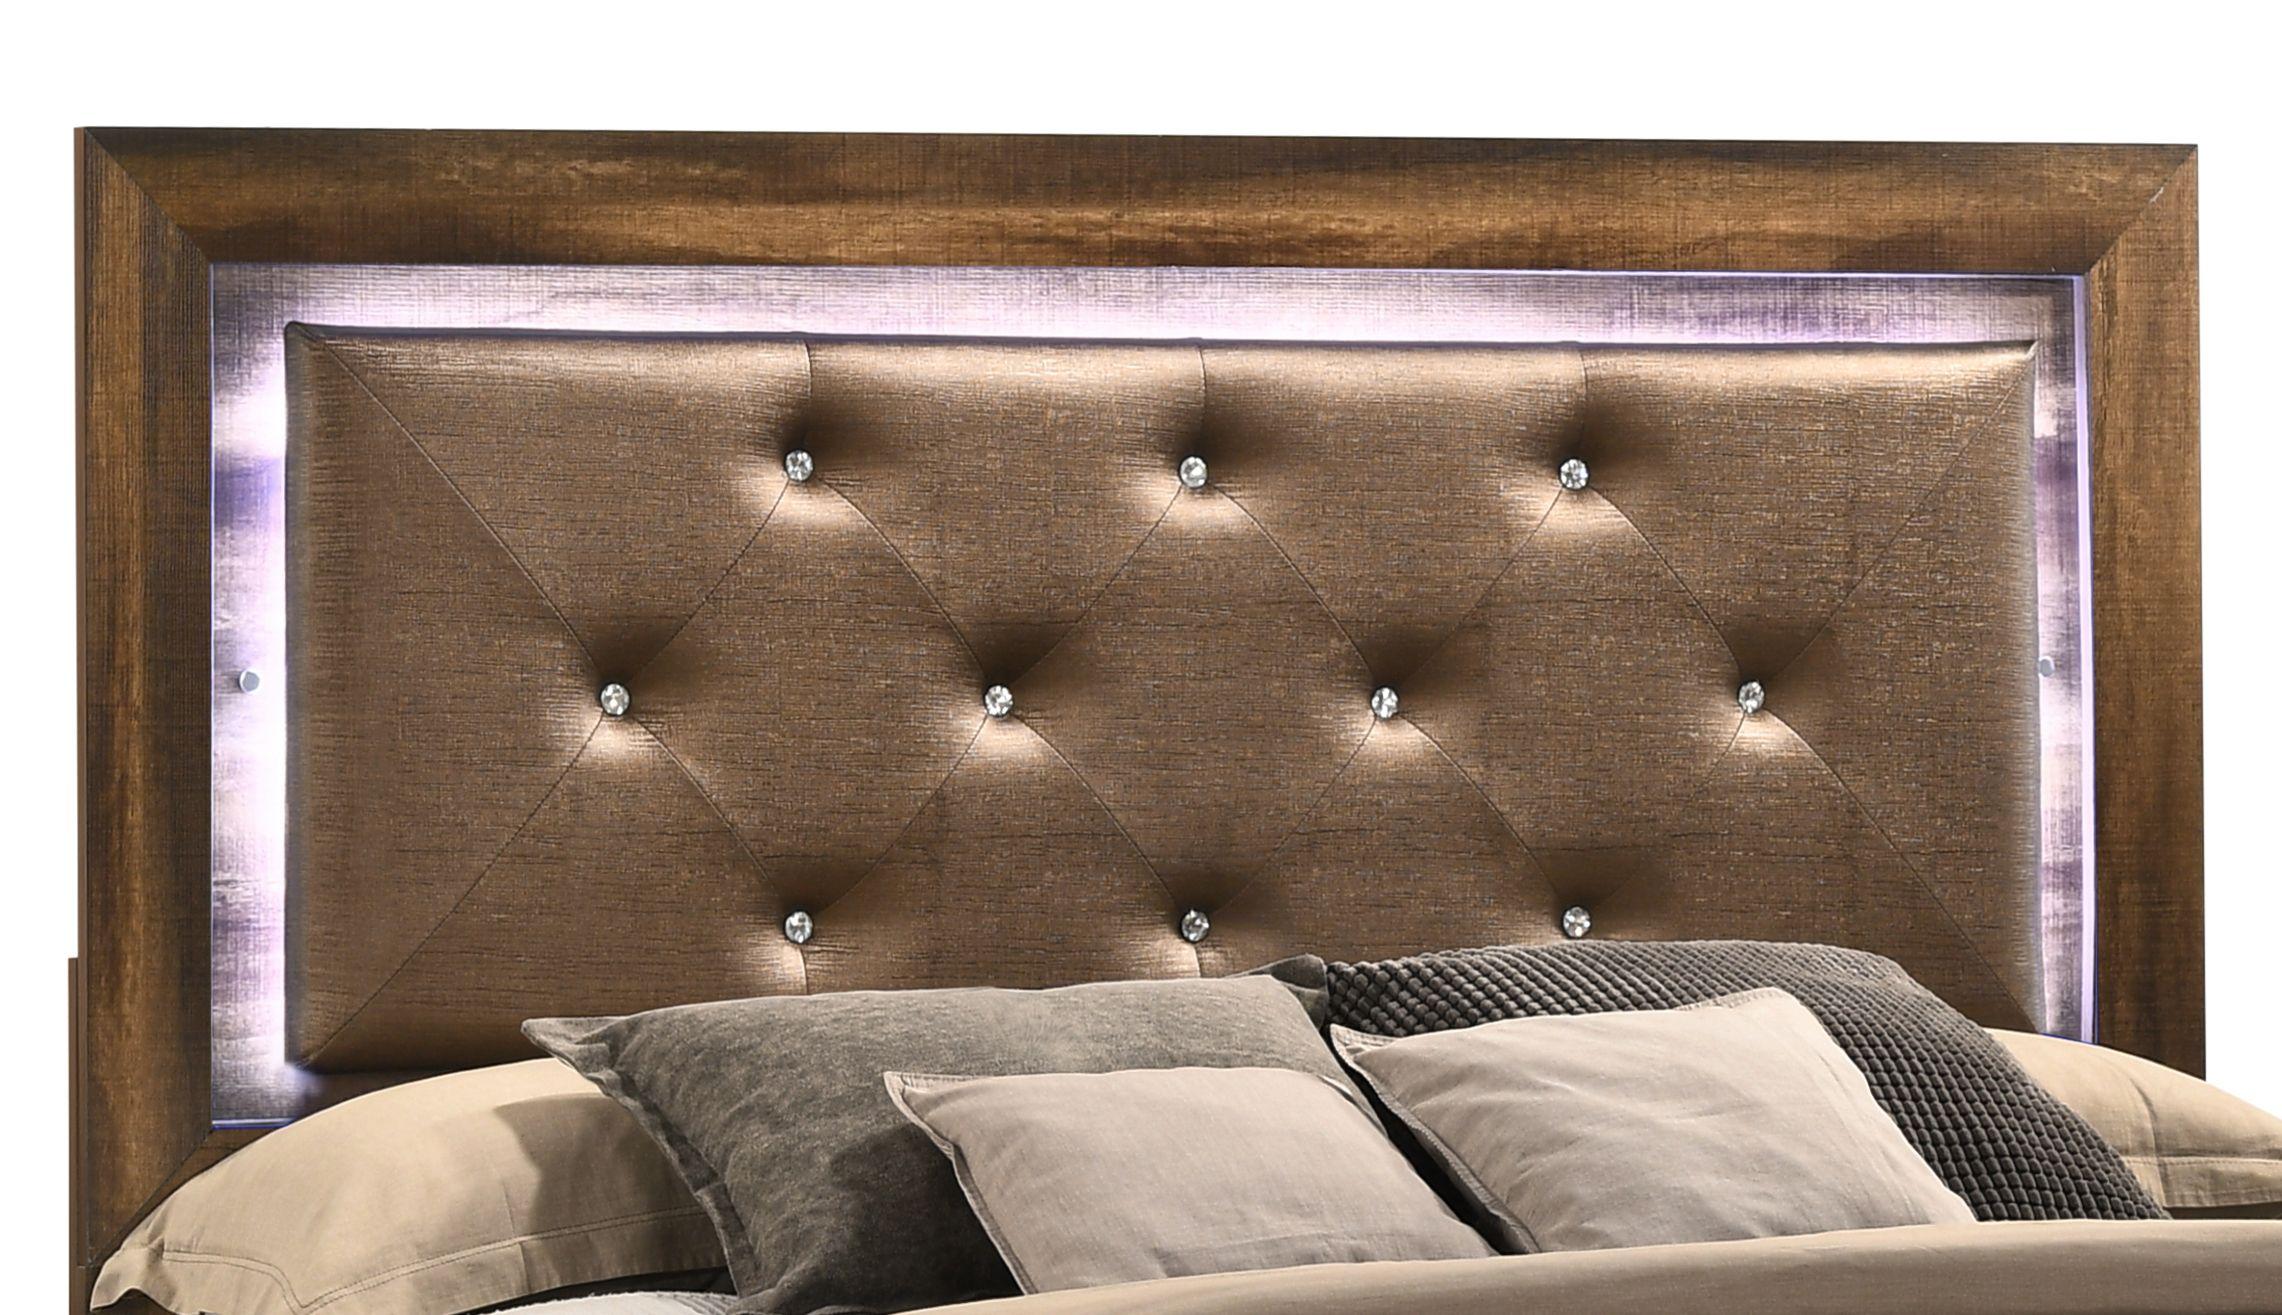 

    
Espresso Finish Queen Platform Bed Modern Cosmos Furniture YasmineBrown
